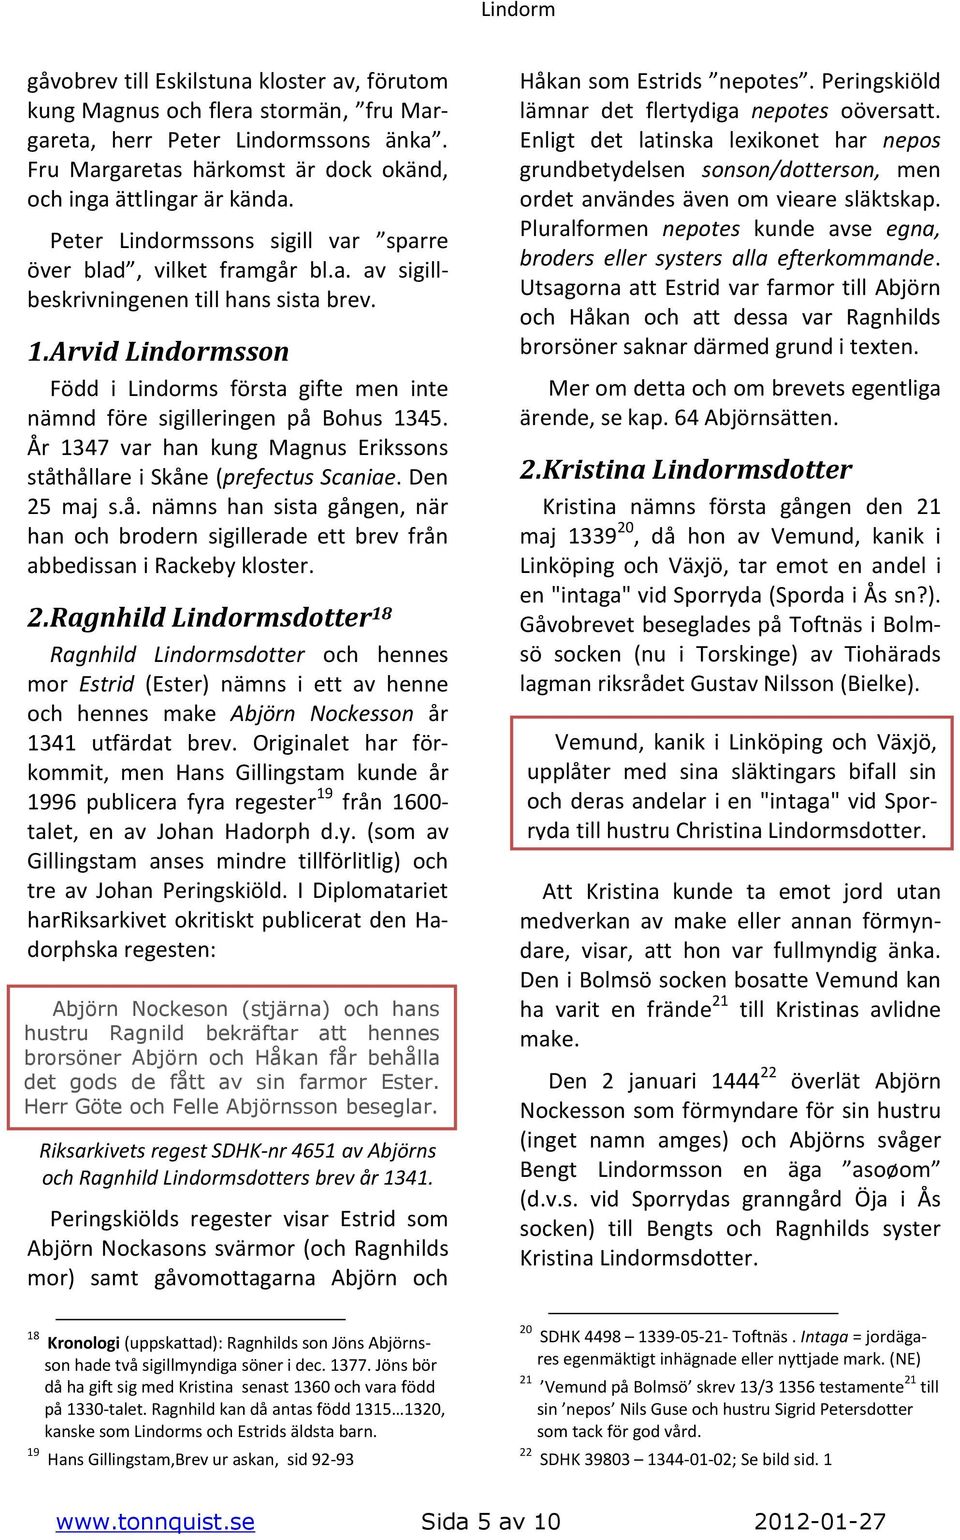 Arvid Lindormsson Född i Lindorms första gifte men inte nämnd före sigilleringen på Bohus 1345. År 1347 var han kung Magnus Erikssons ståthållare i Skåne (prefectus Scaniae. Den 25 maj s.å. nämns han sista gången, när han och brodern sigillerade ett brev från abbedissan i Rackeby kloster.